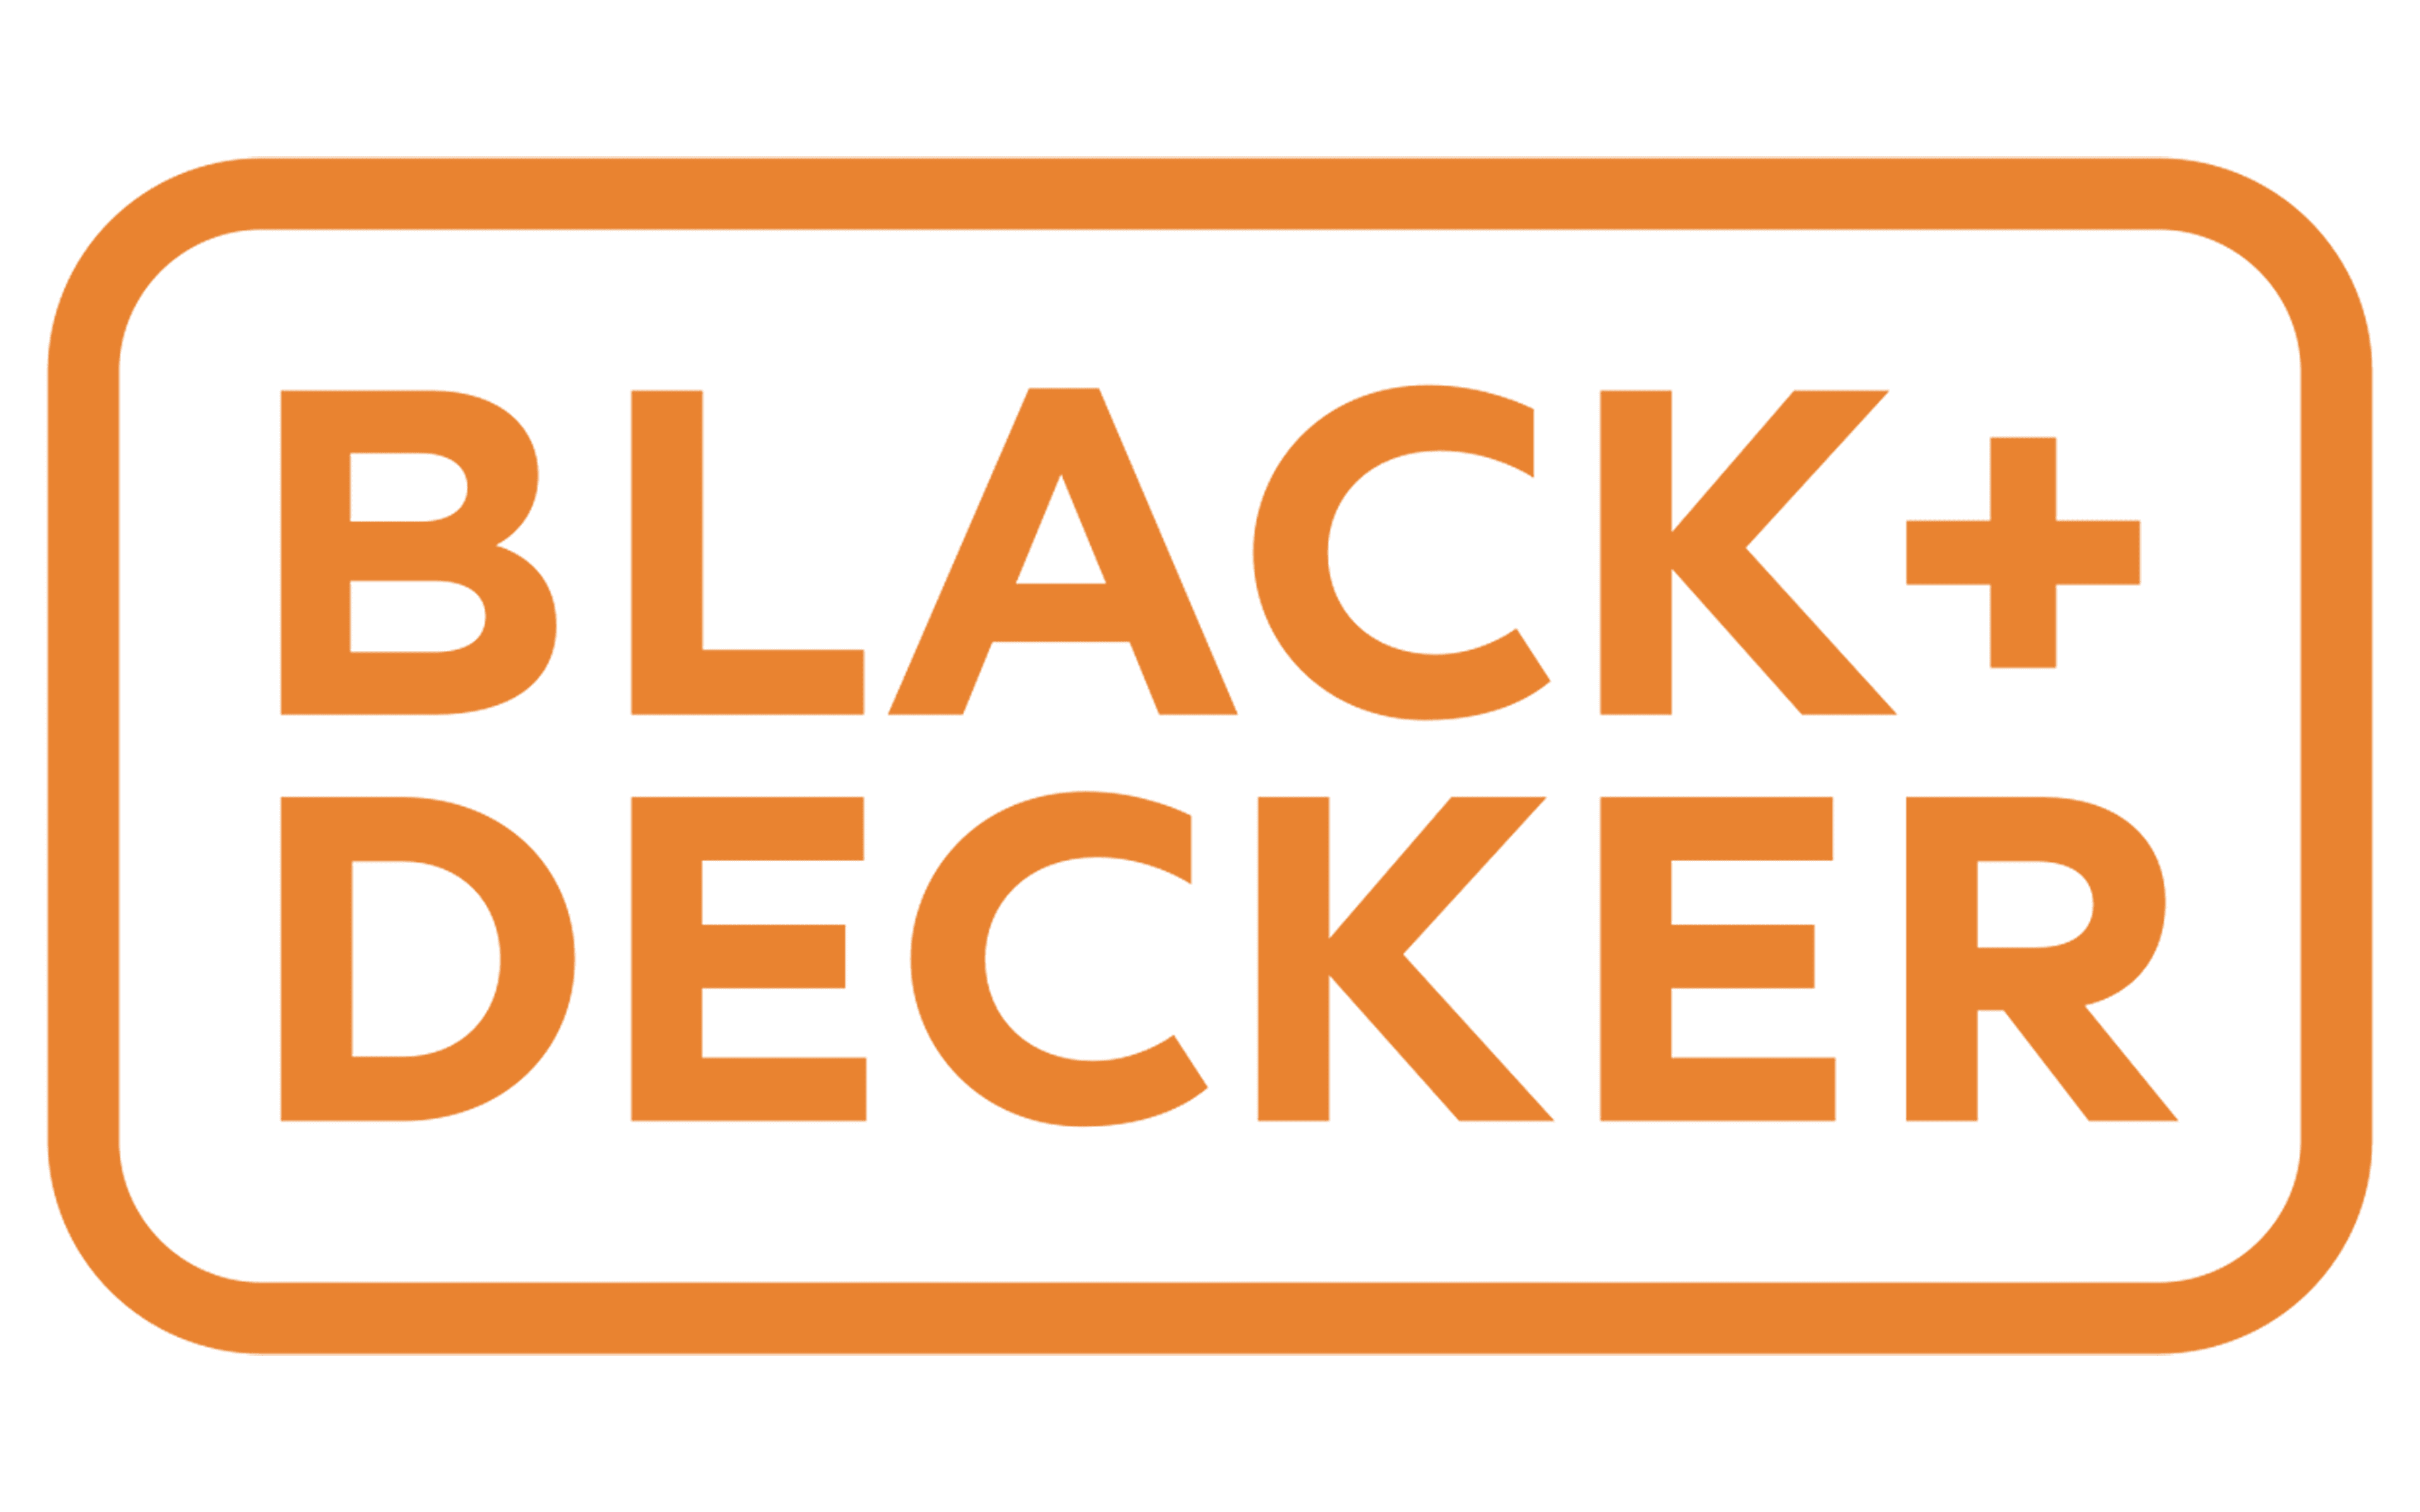 Black & Decker 7152